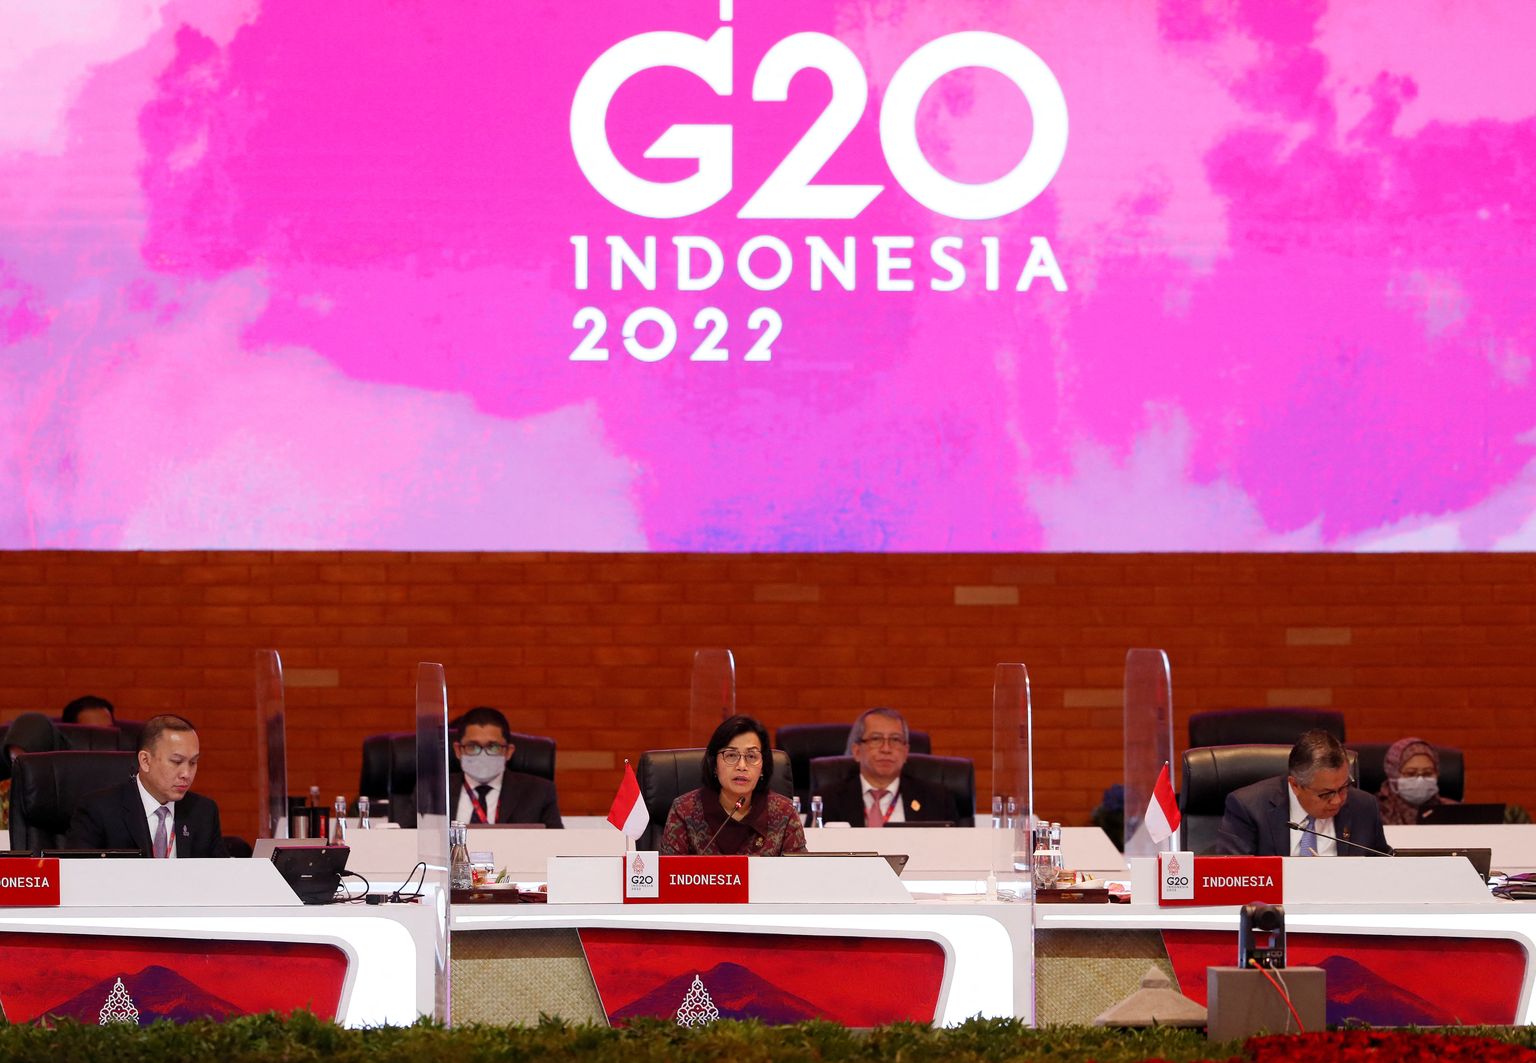 Indoneesia rahandusminister Sri Mulyani Indrawati kõnelemas G20 rahandusministrite ja keskpankurite kohtumise avamisel Balil, Indoneesias.